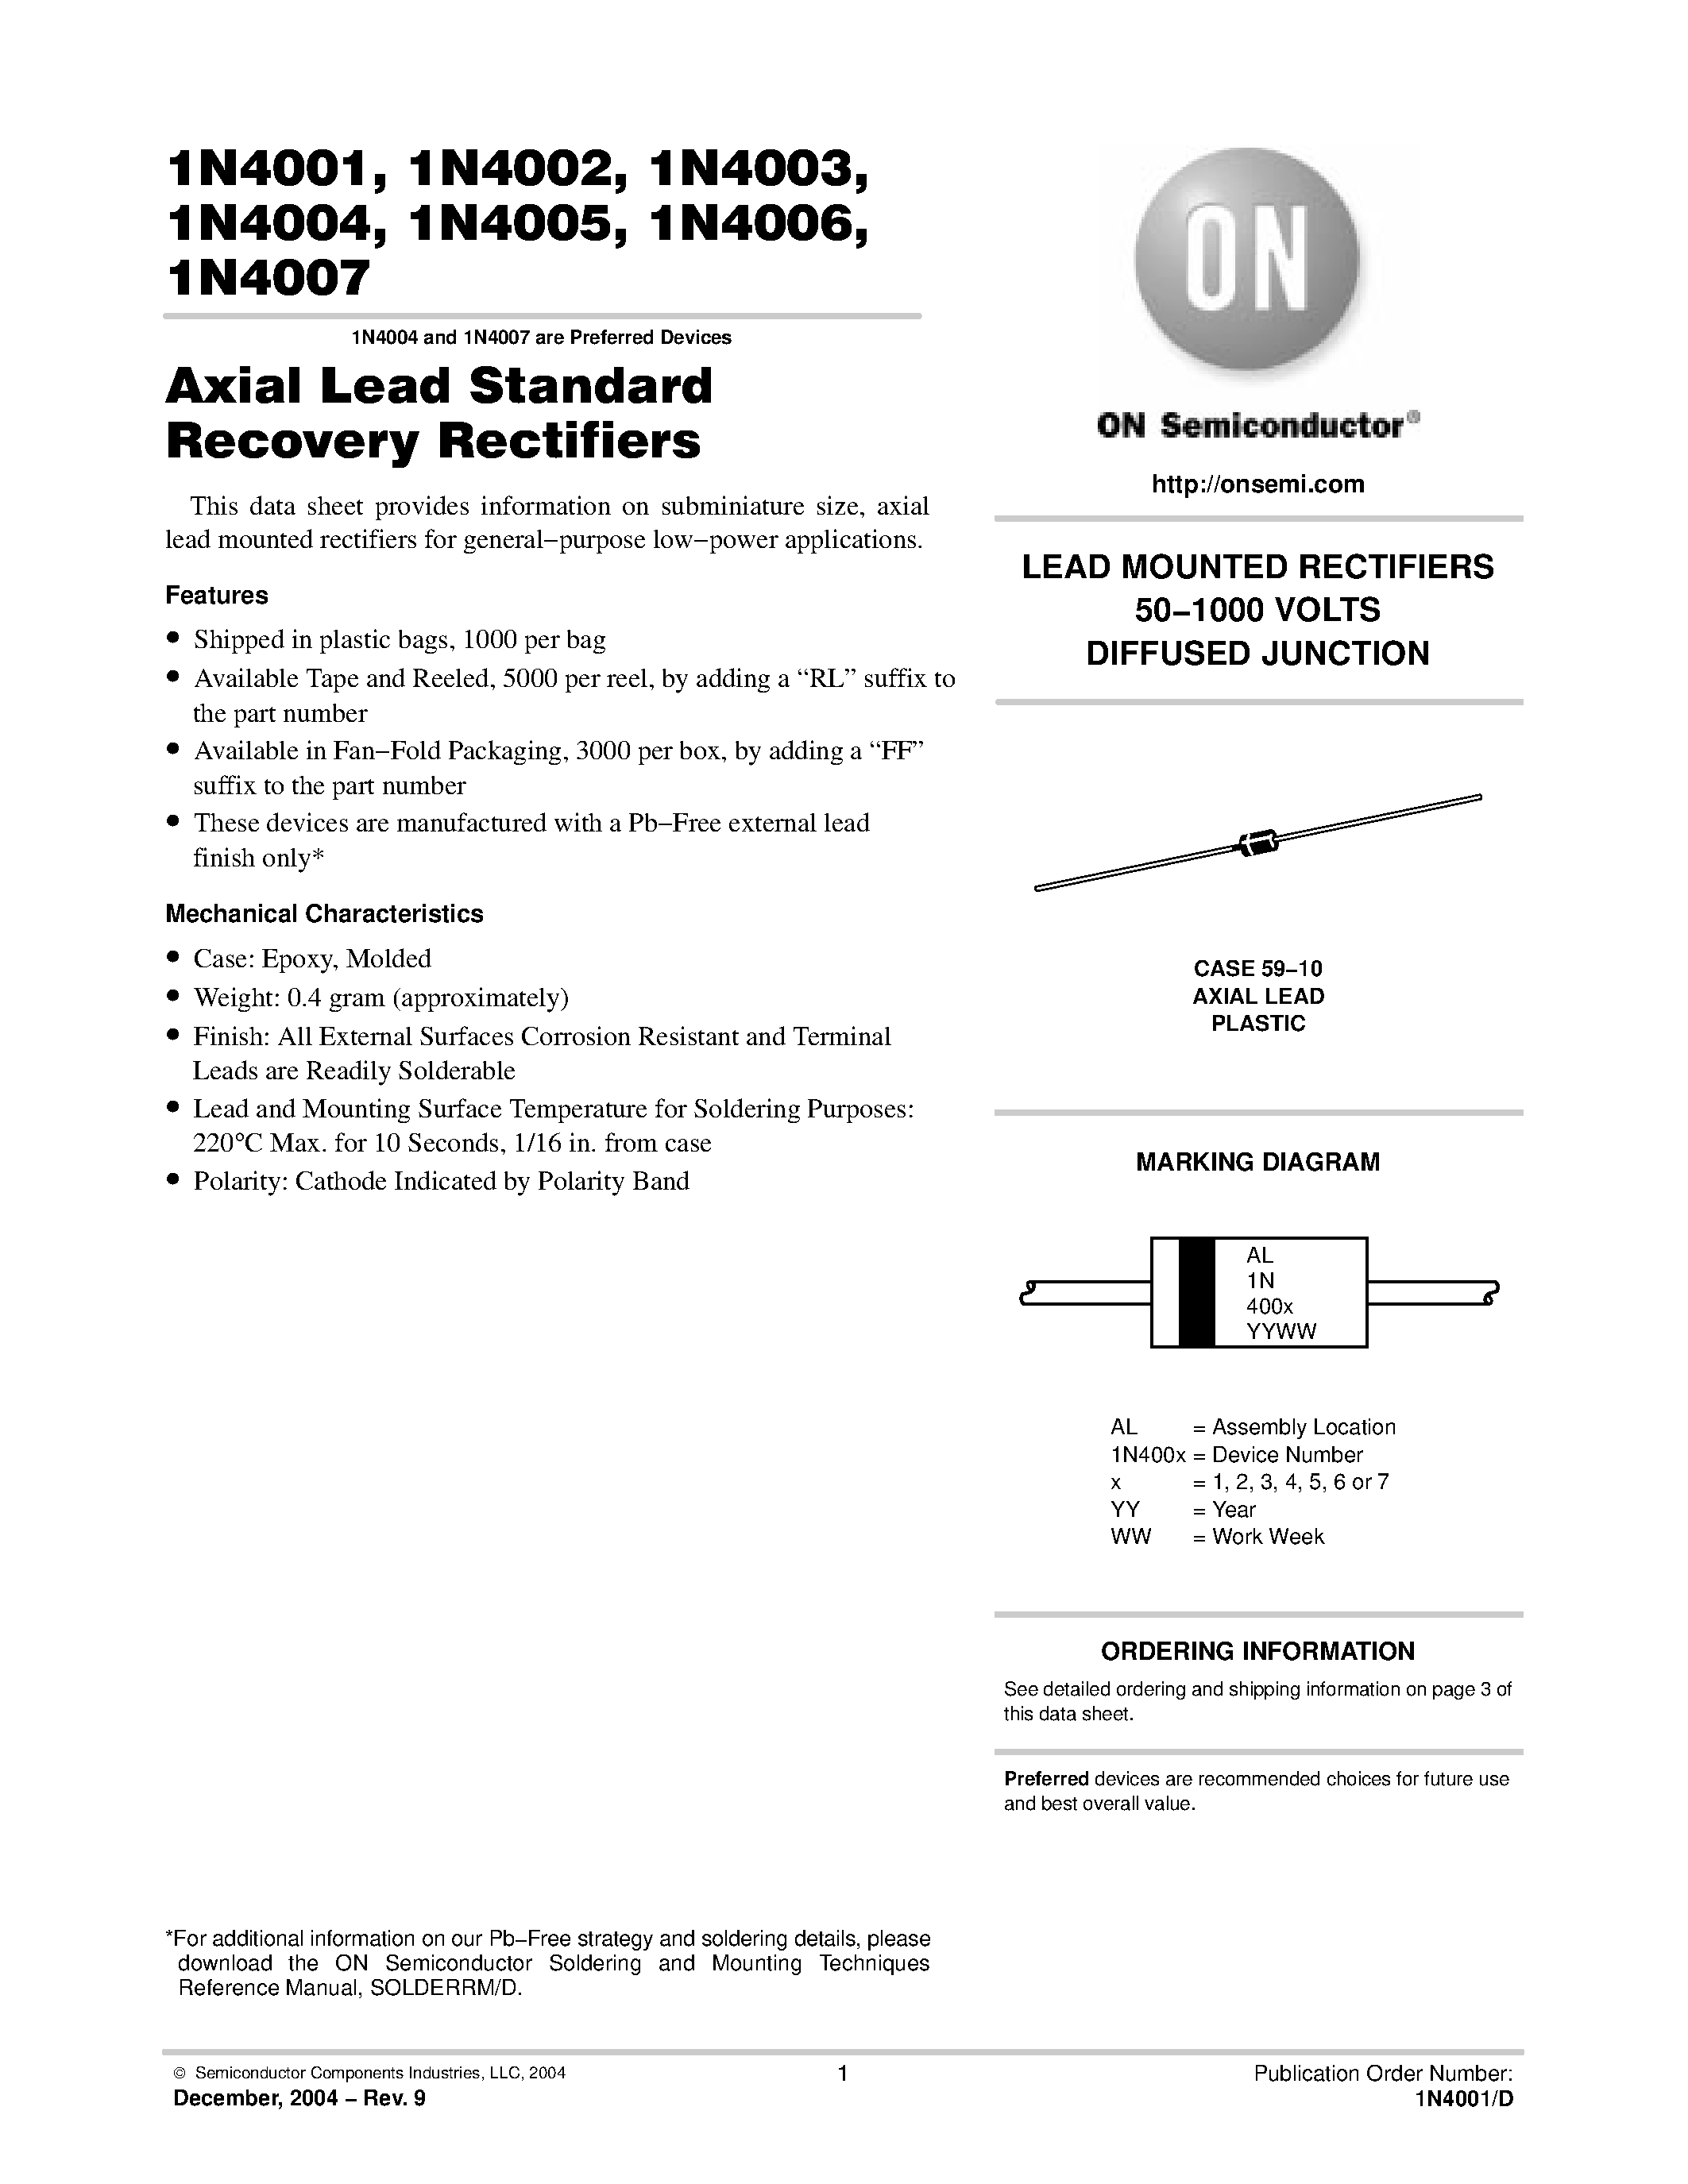 Datasheet 1N4001 - (1N4001 - 1N4007) Axial Lead Standard Recovery Rectifiers page 1